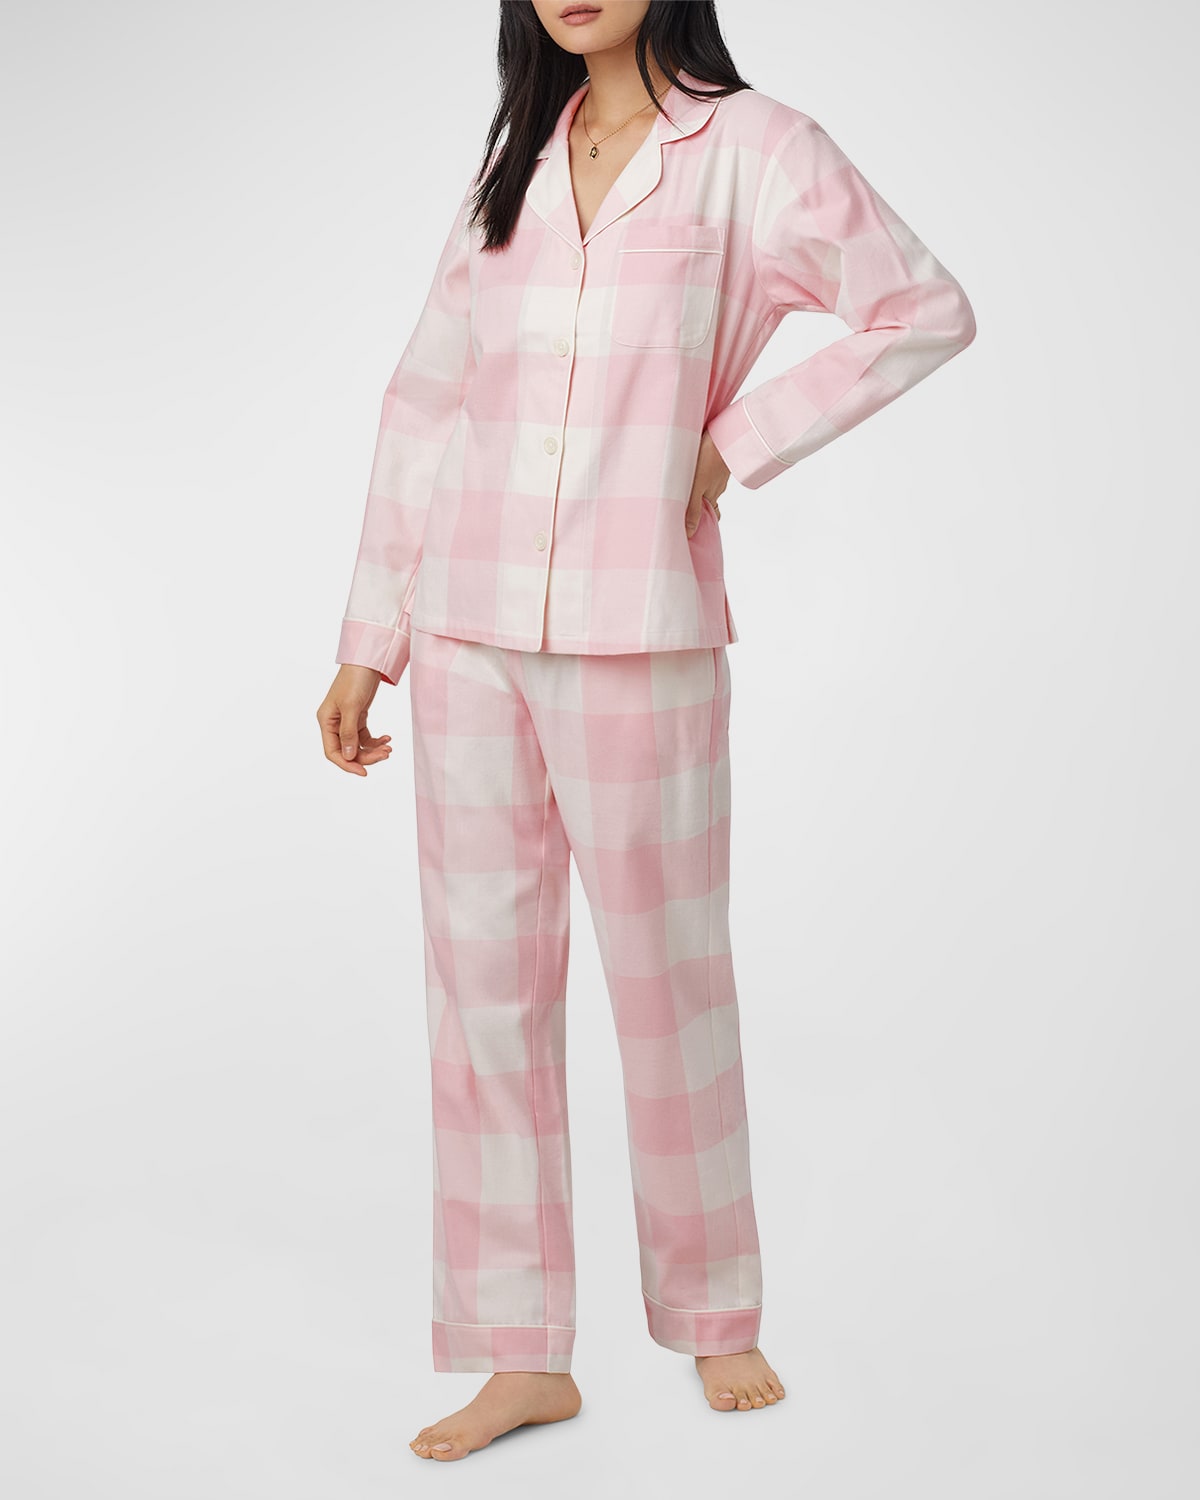 Bedhead Pajamas Striped Organic Cotton Poplin Pajama Set Neiman Marcus